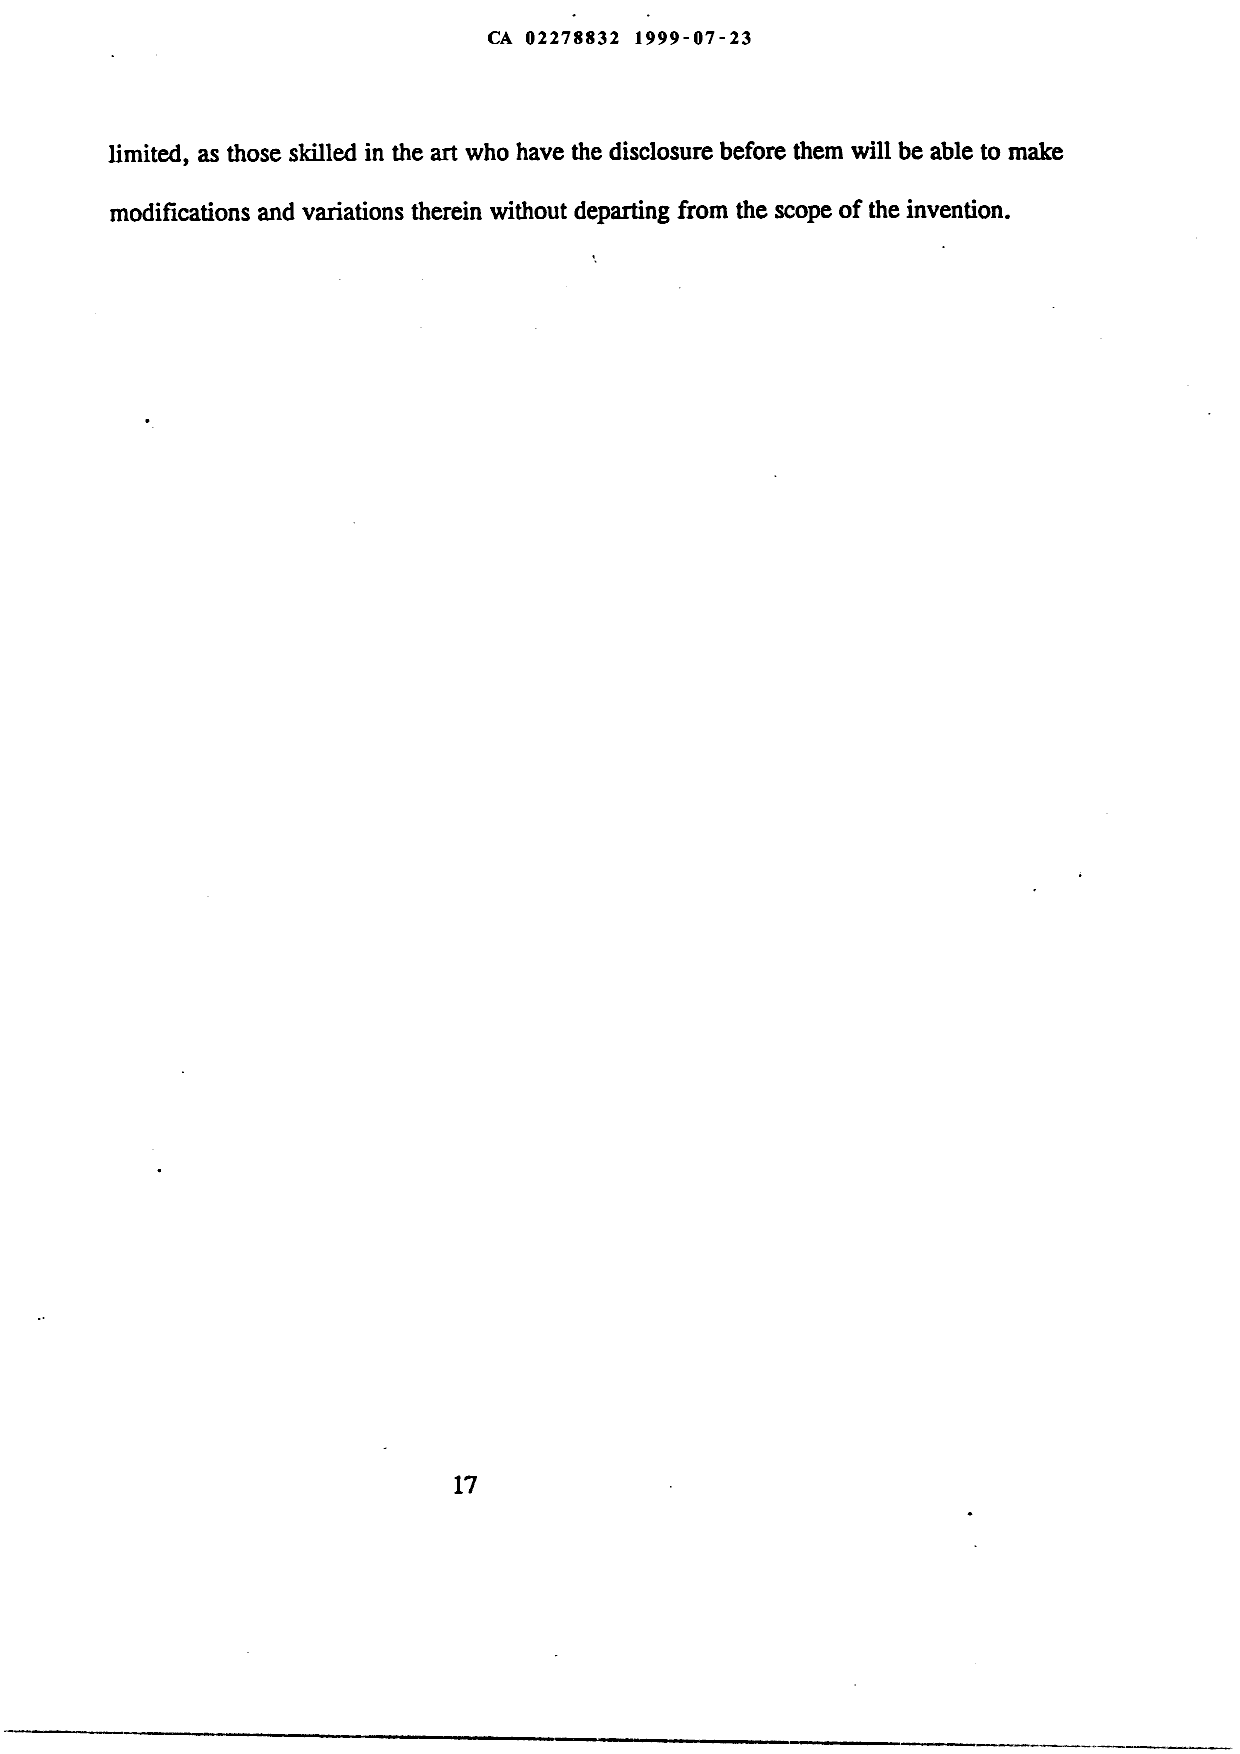 Canadian Patent Document 2278832. Description 19990723. Image 17 of 17